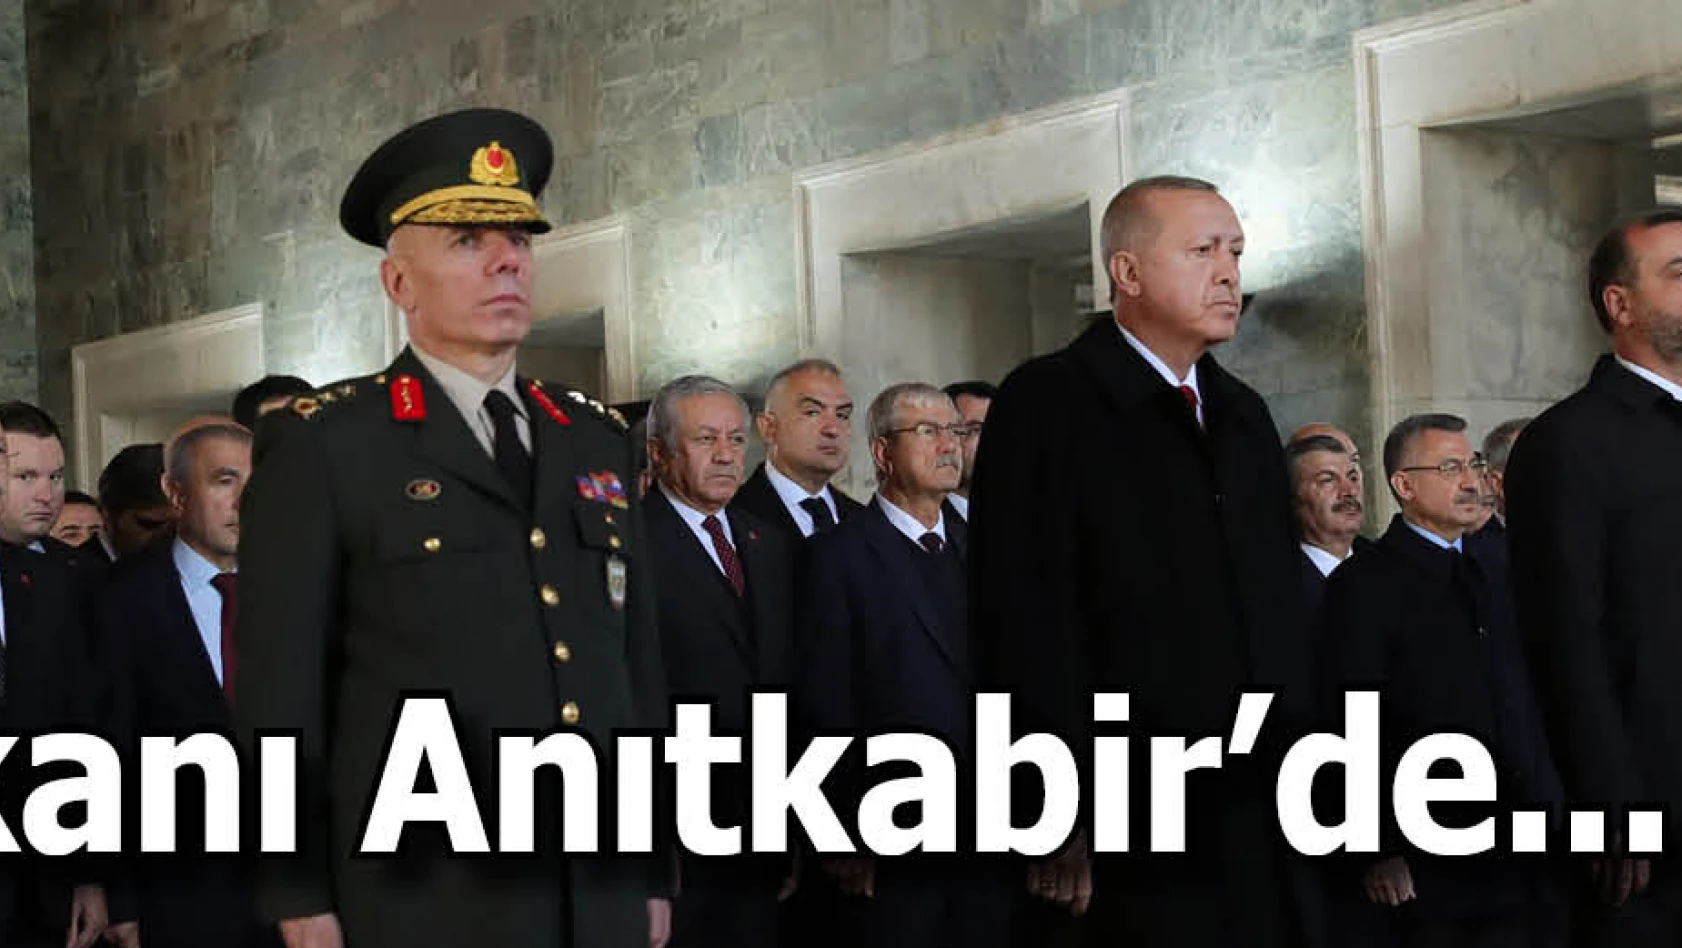 Devlet erkanı Cumhurbaşkanı Erdoğan'ın başkanlığında Anıtkabir'de